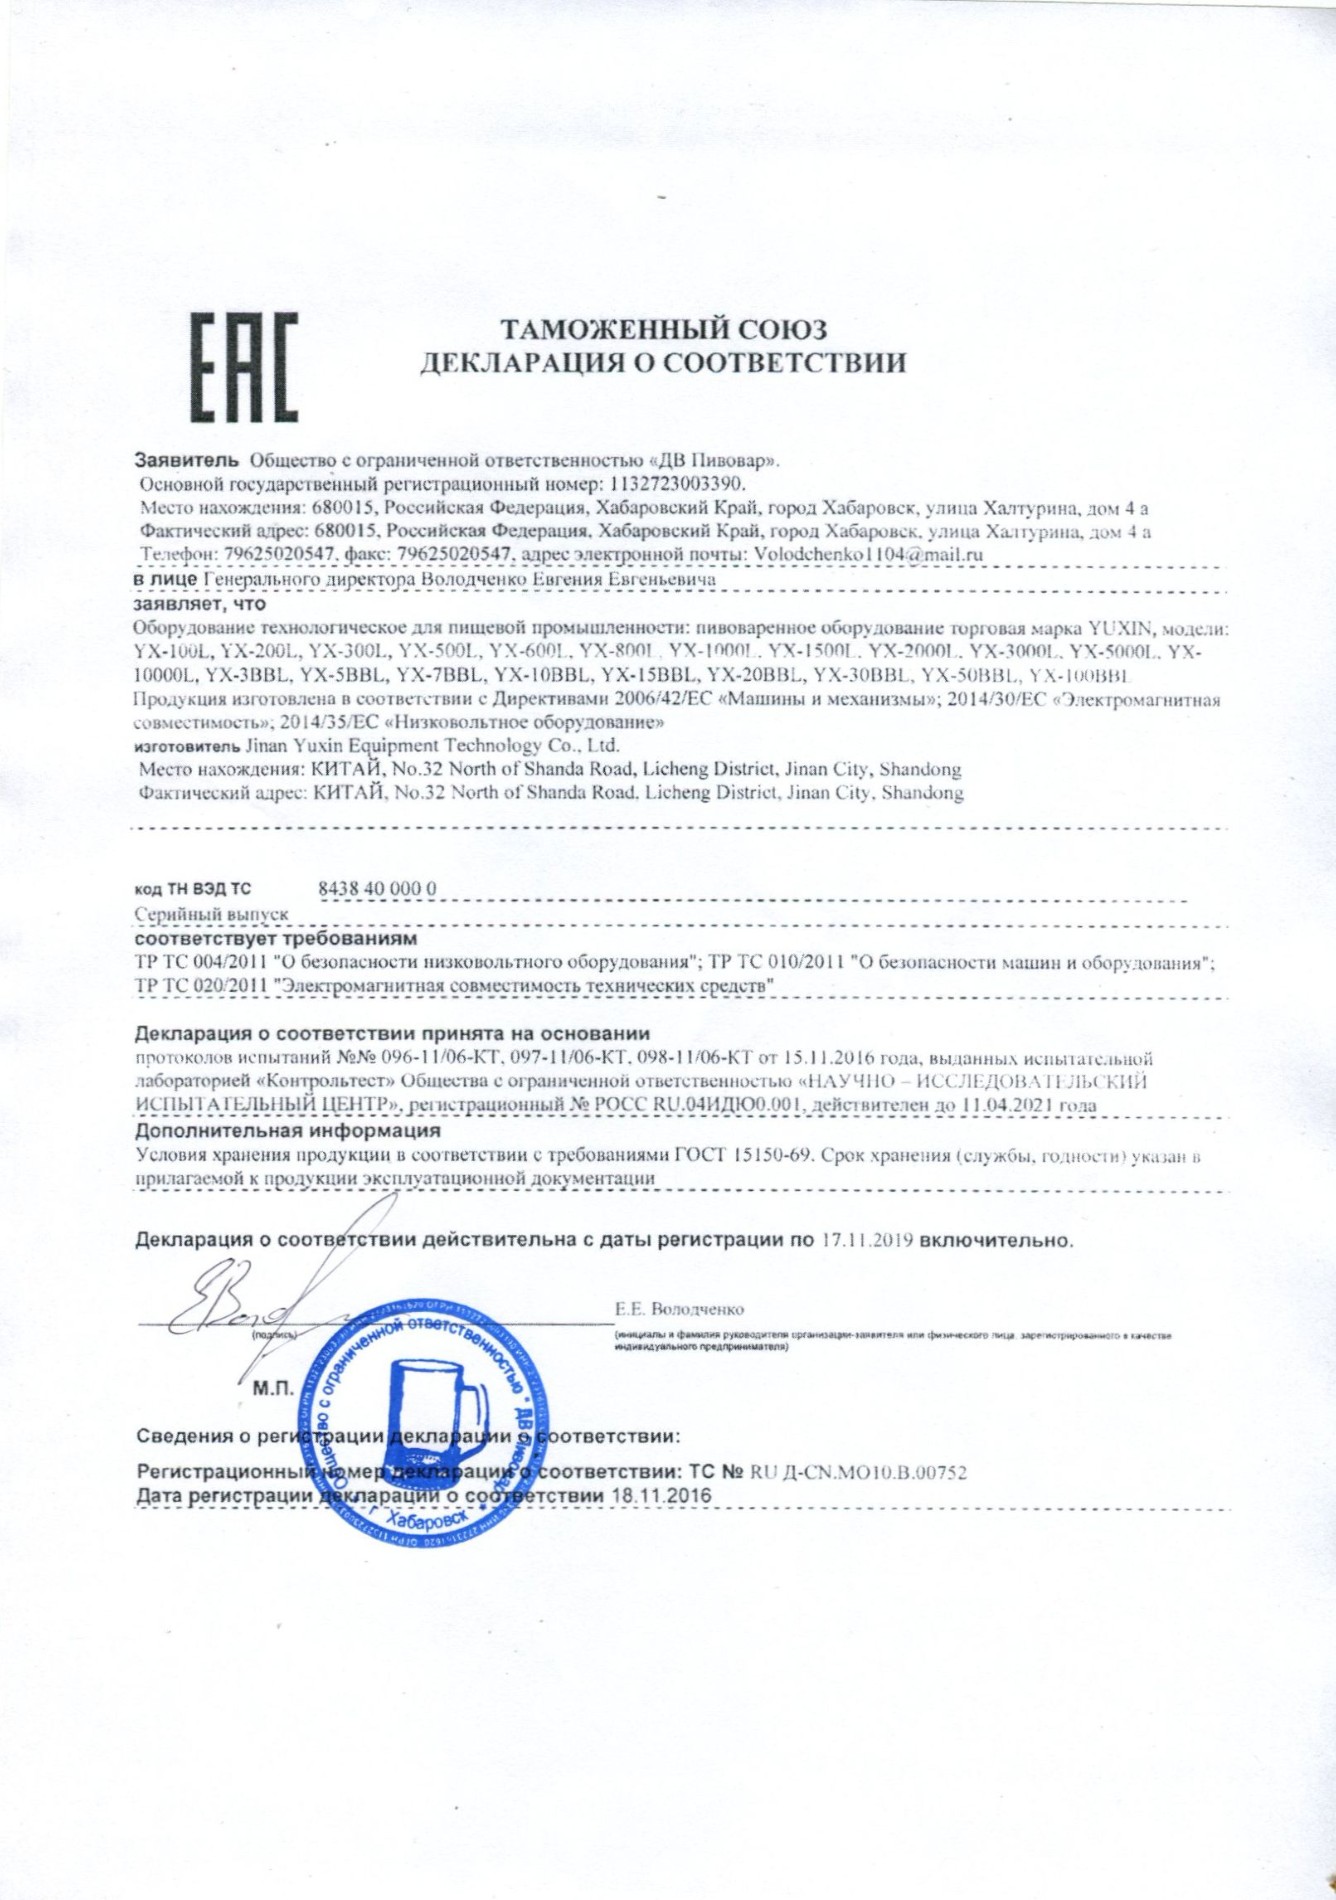 EAC-certifikat